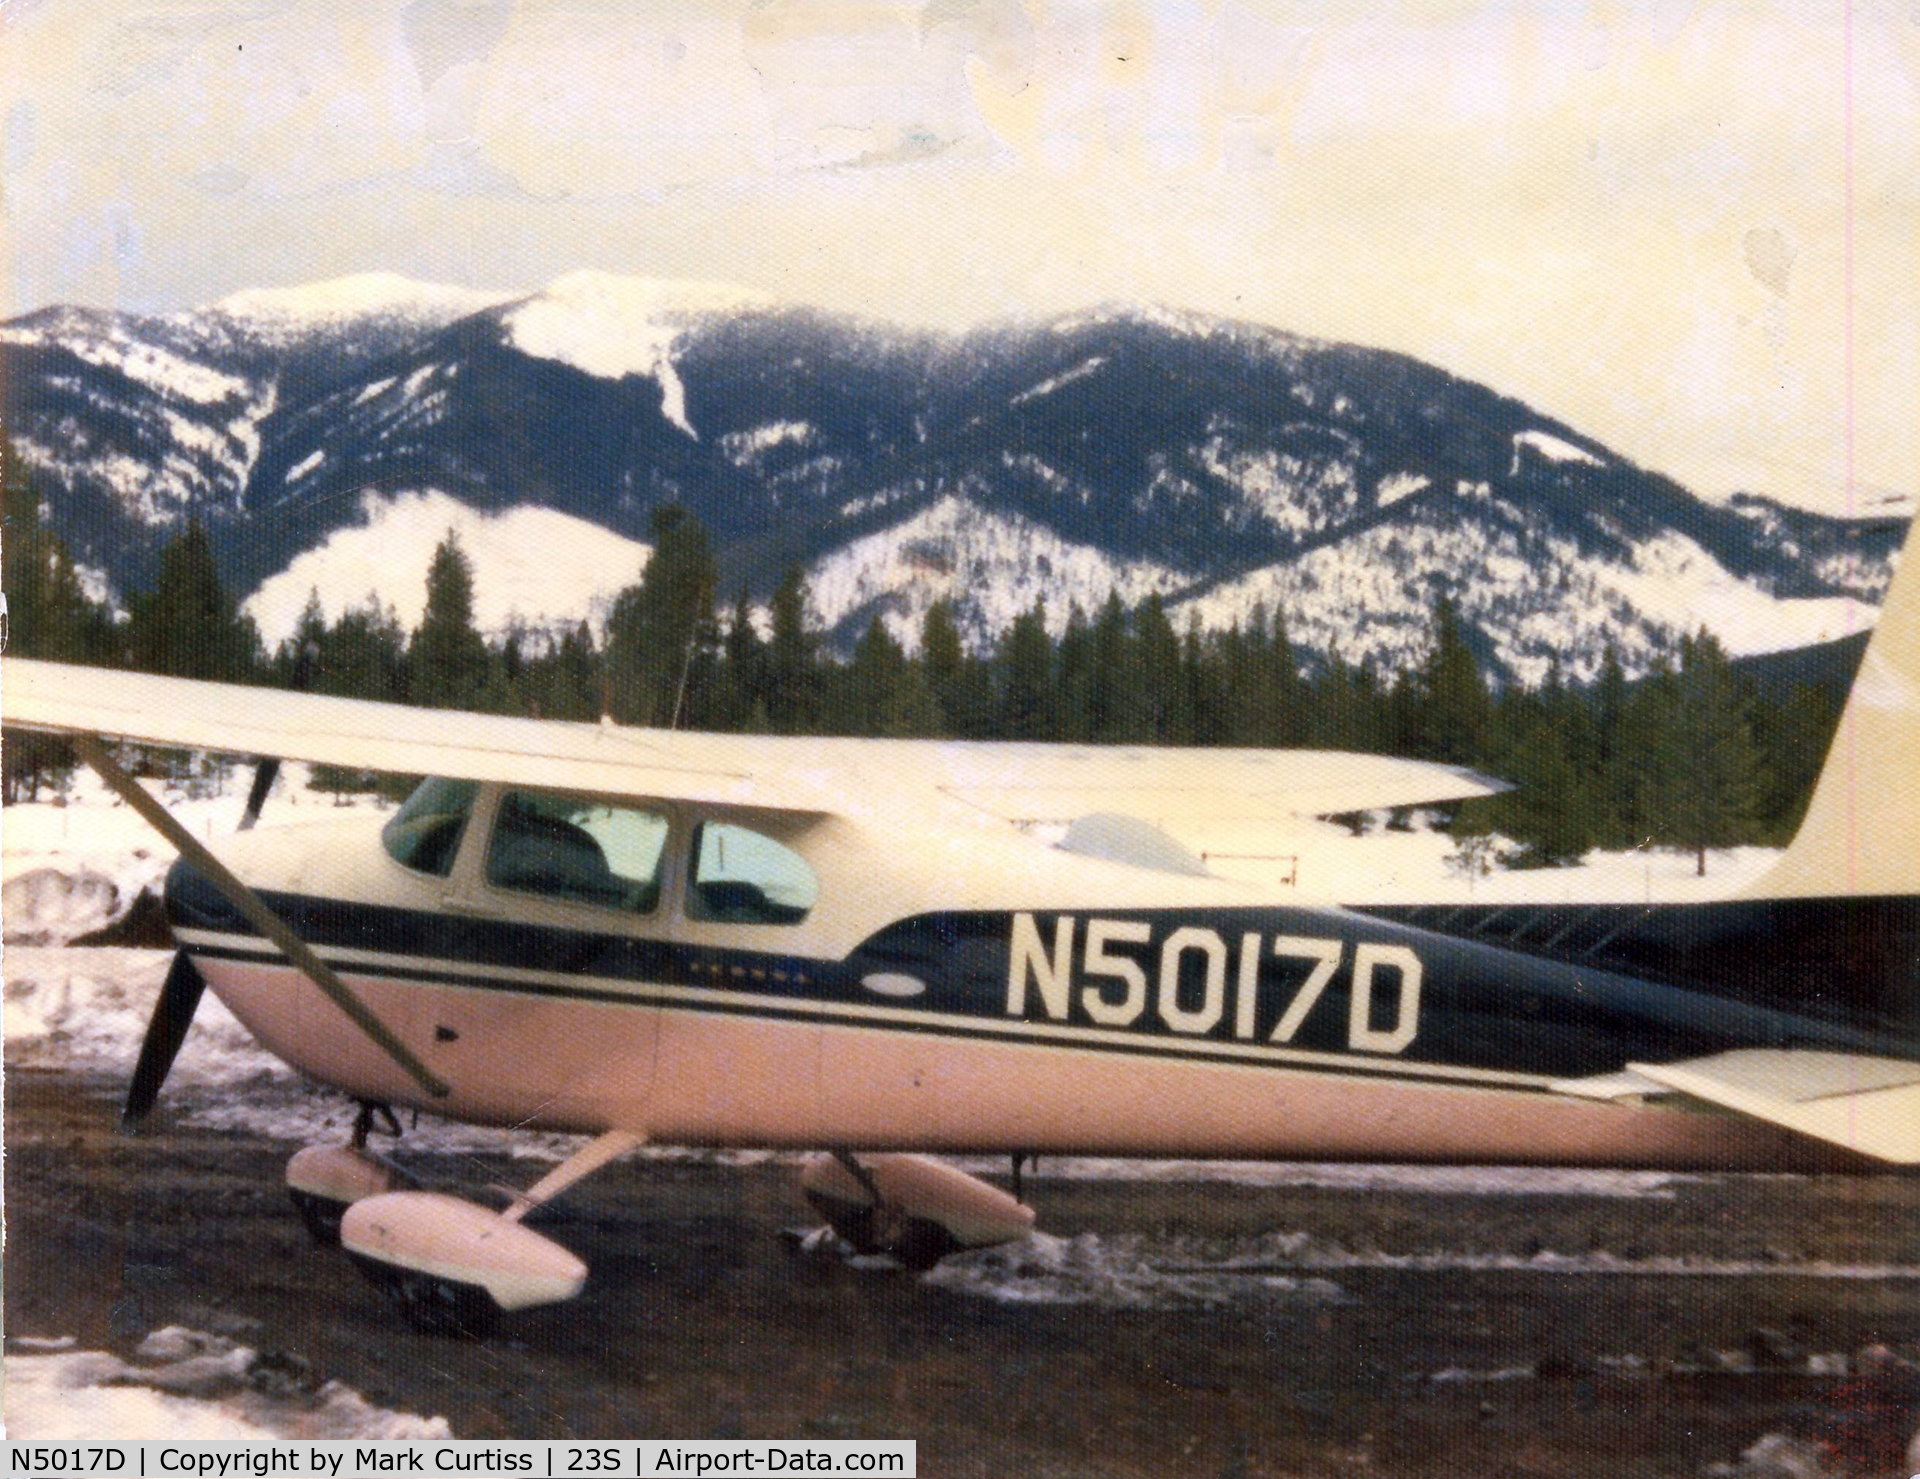 N5017D, 1958 Cessna 182A Skylane C/N 51117, My Dad's plane in Seeley Lake, Mt. around 1975